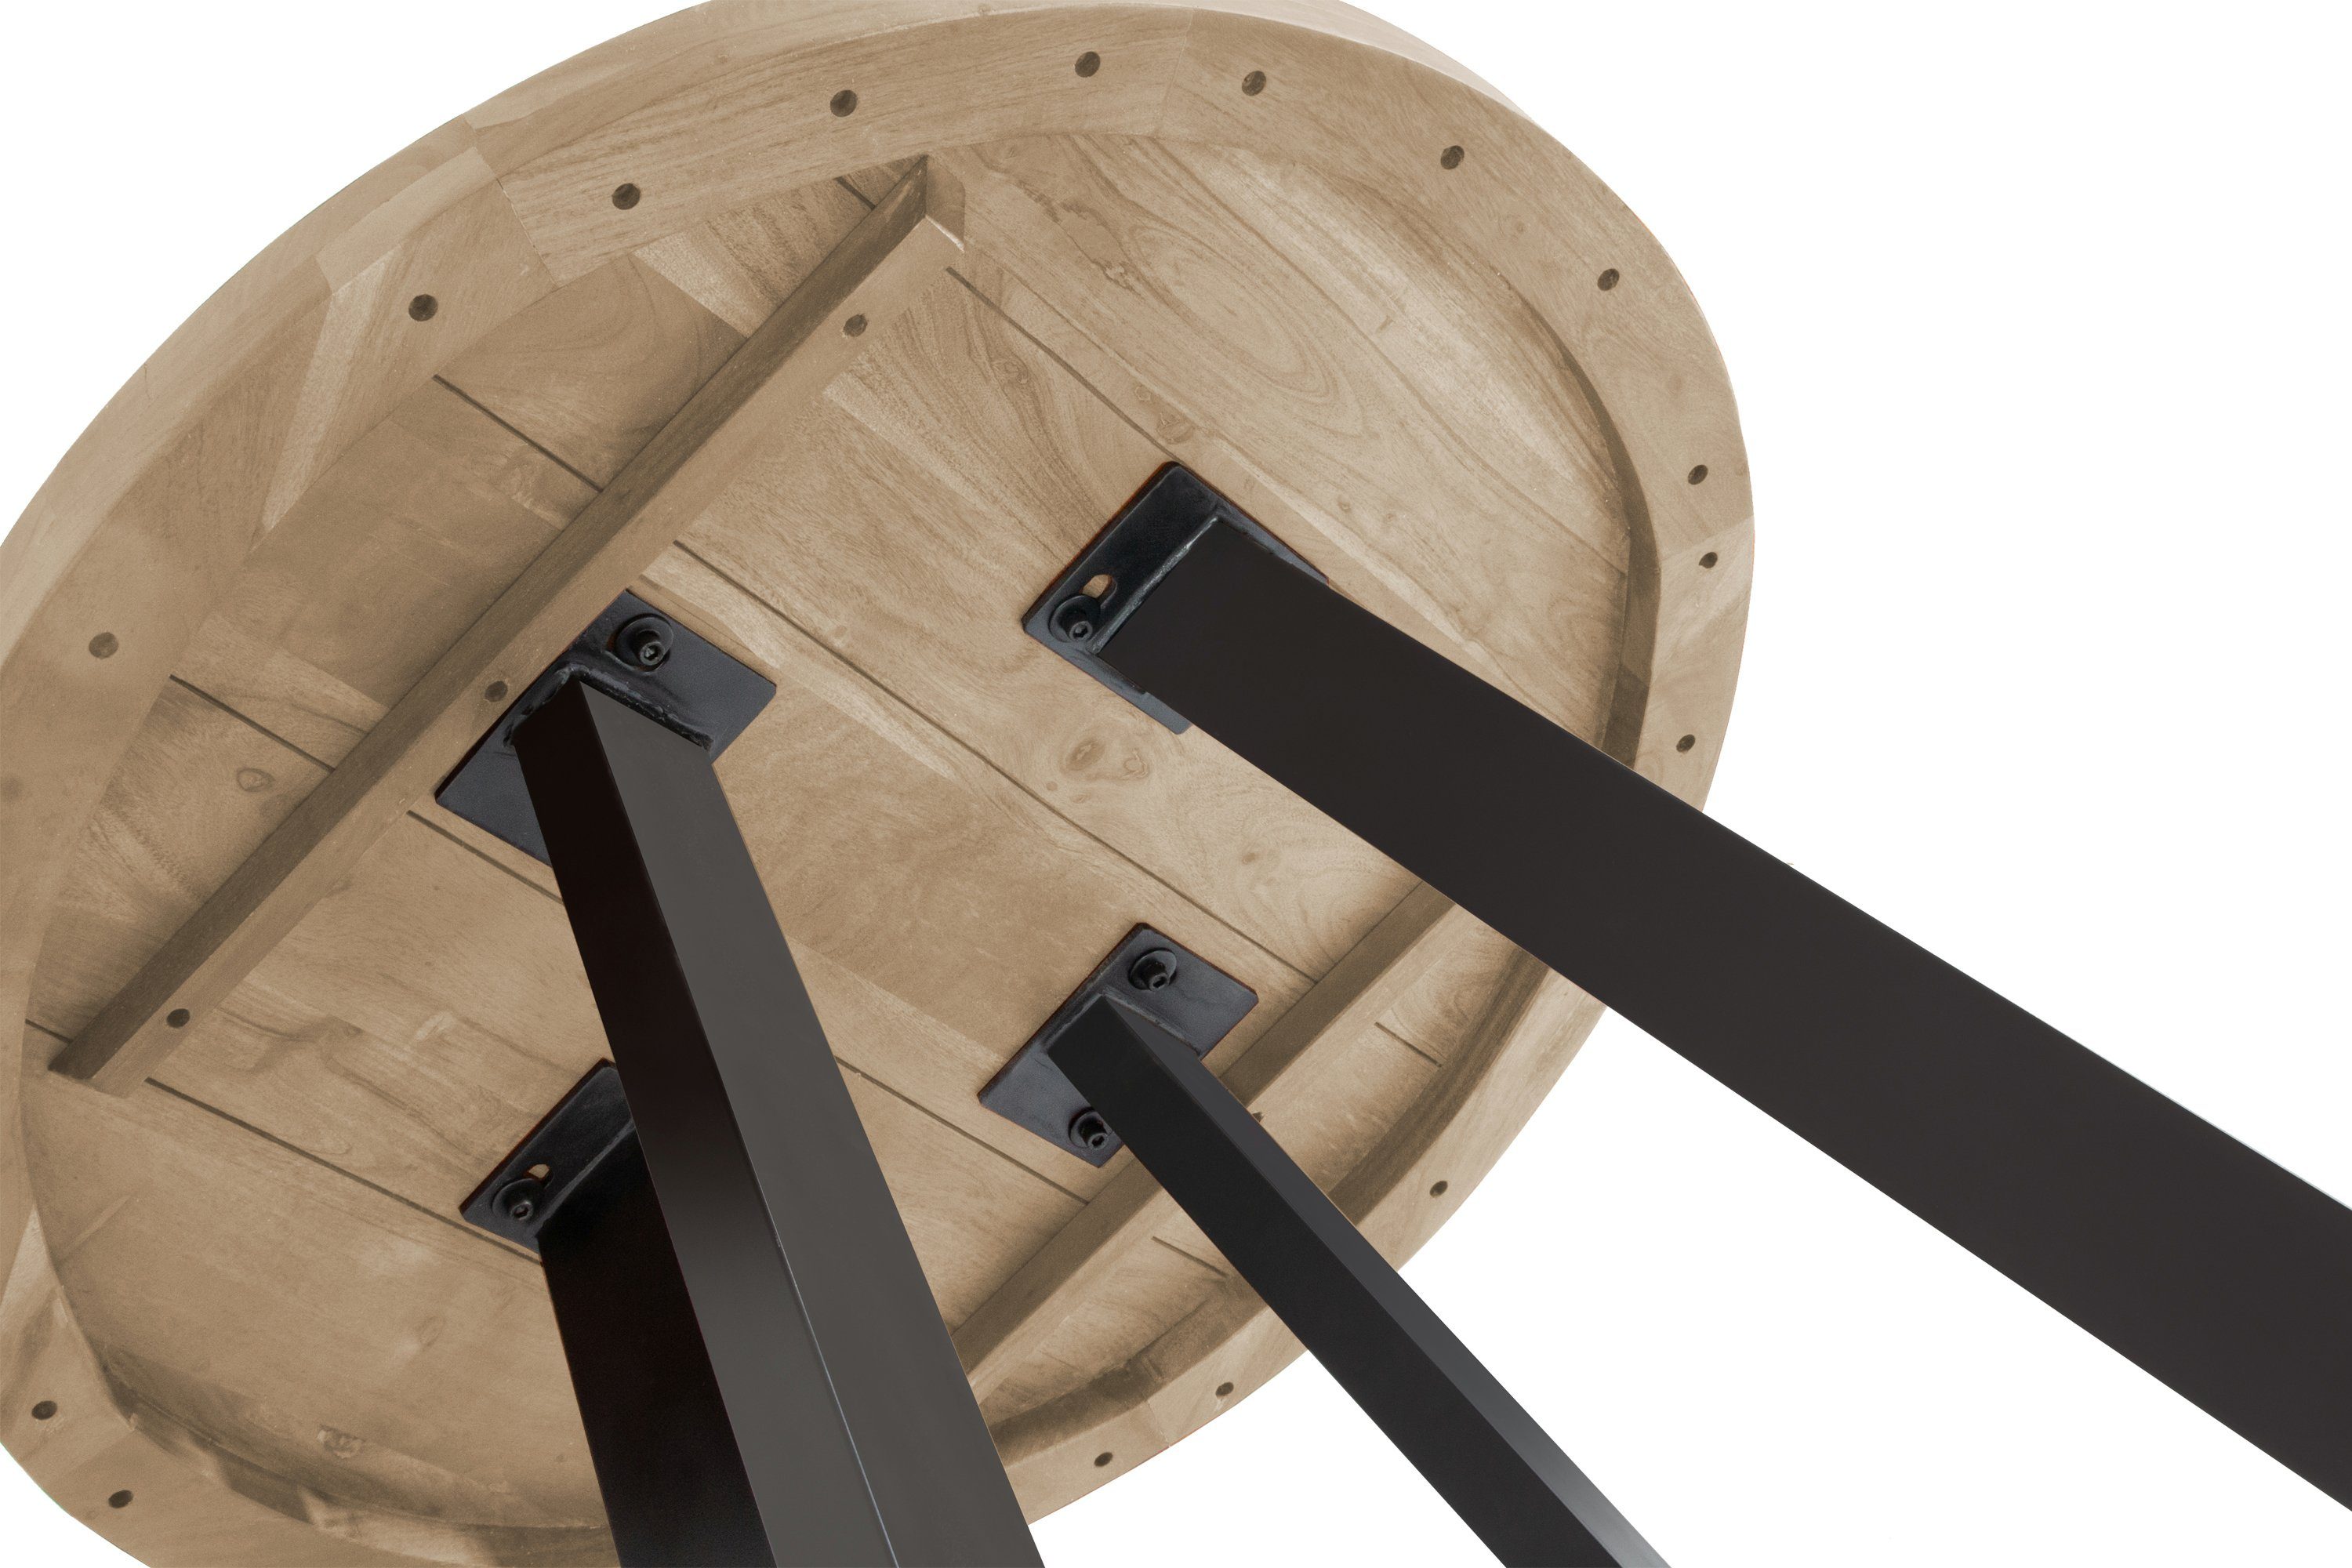 schwarz Samira, SAM® runde natur Akazienholz, 4-Fußgestell | aus Metall Tischplatte, Esstisch